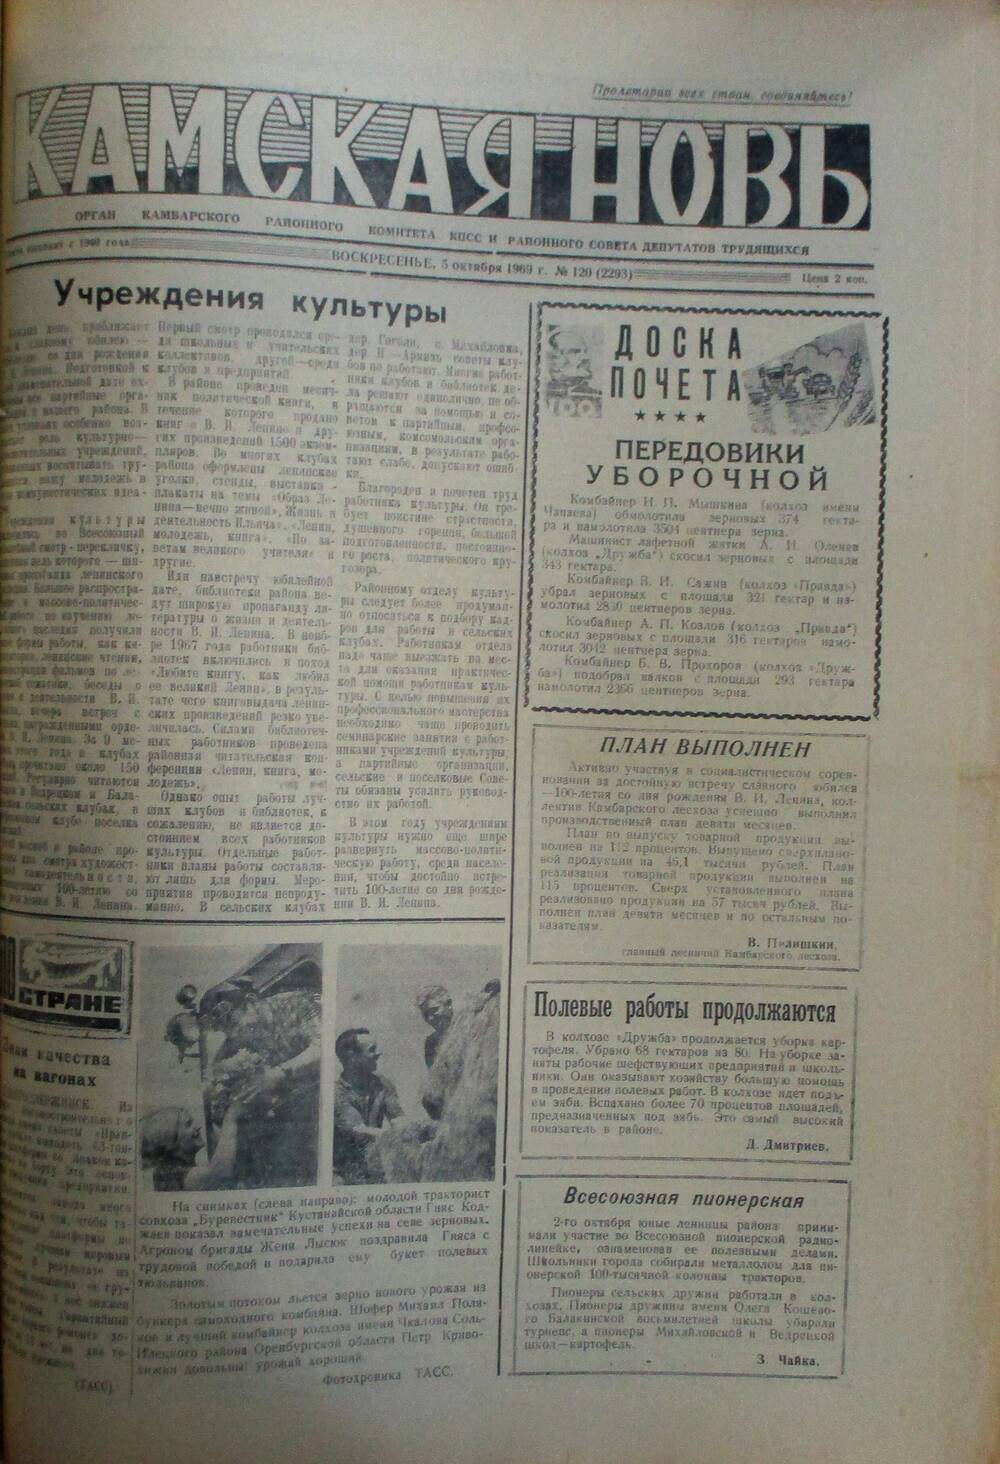 Газеты Камская новь за 1969 год, орган Камбарского райсовета и  РККПСС, с №1 по №66, с №68 по №156. №120.